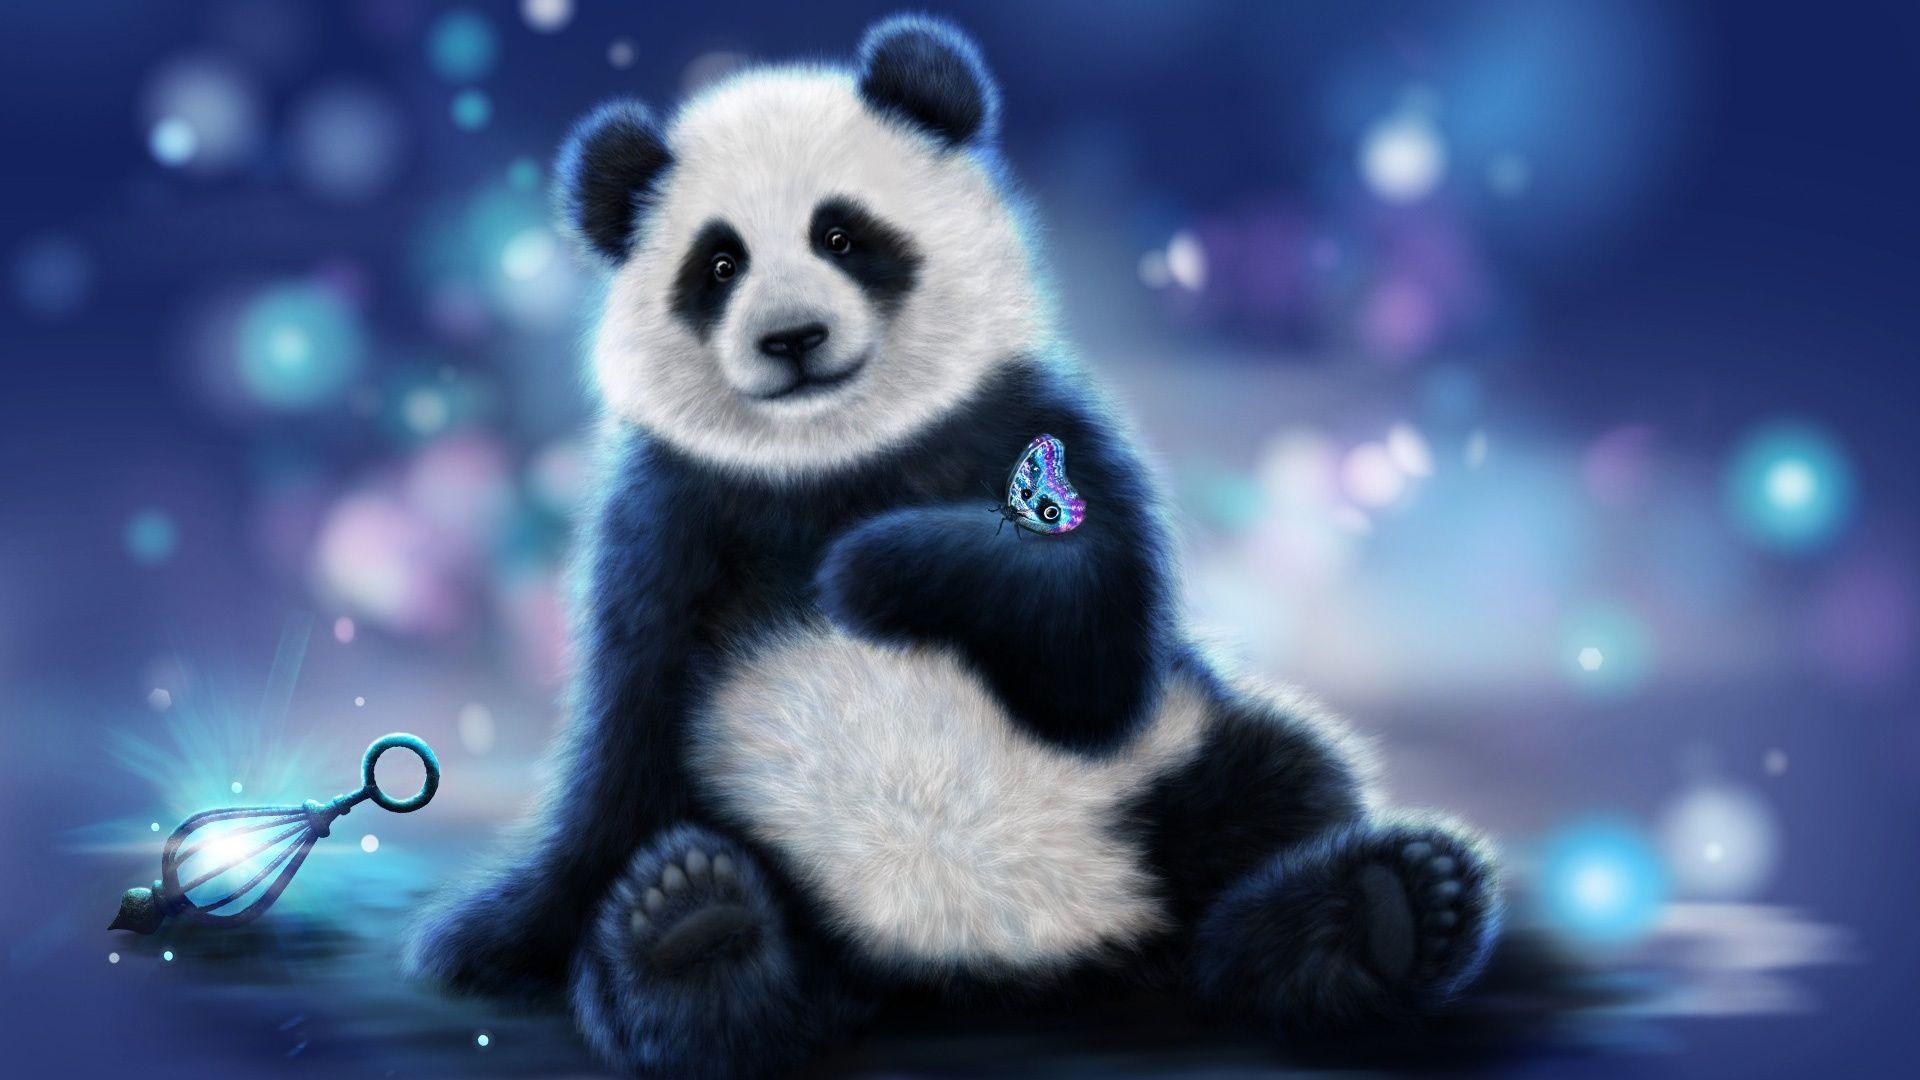 Cute Panda Image HD Tumblr Free